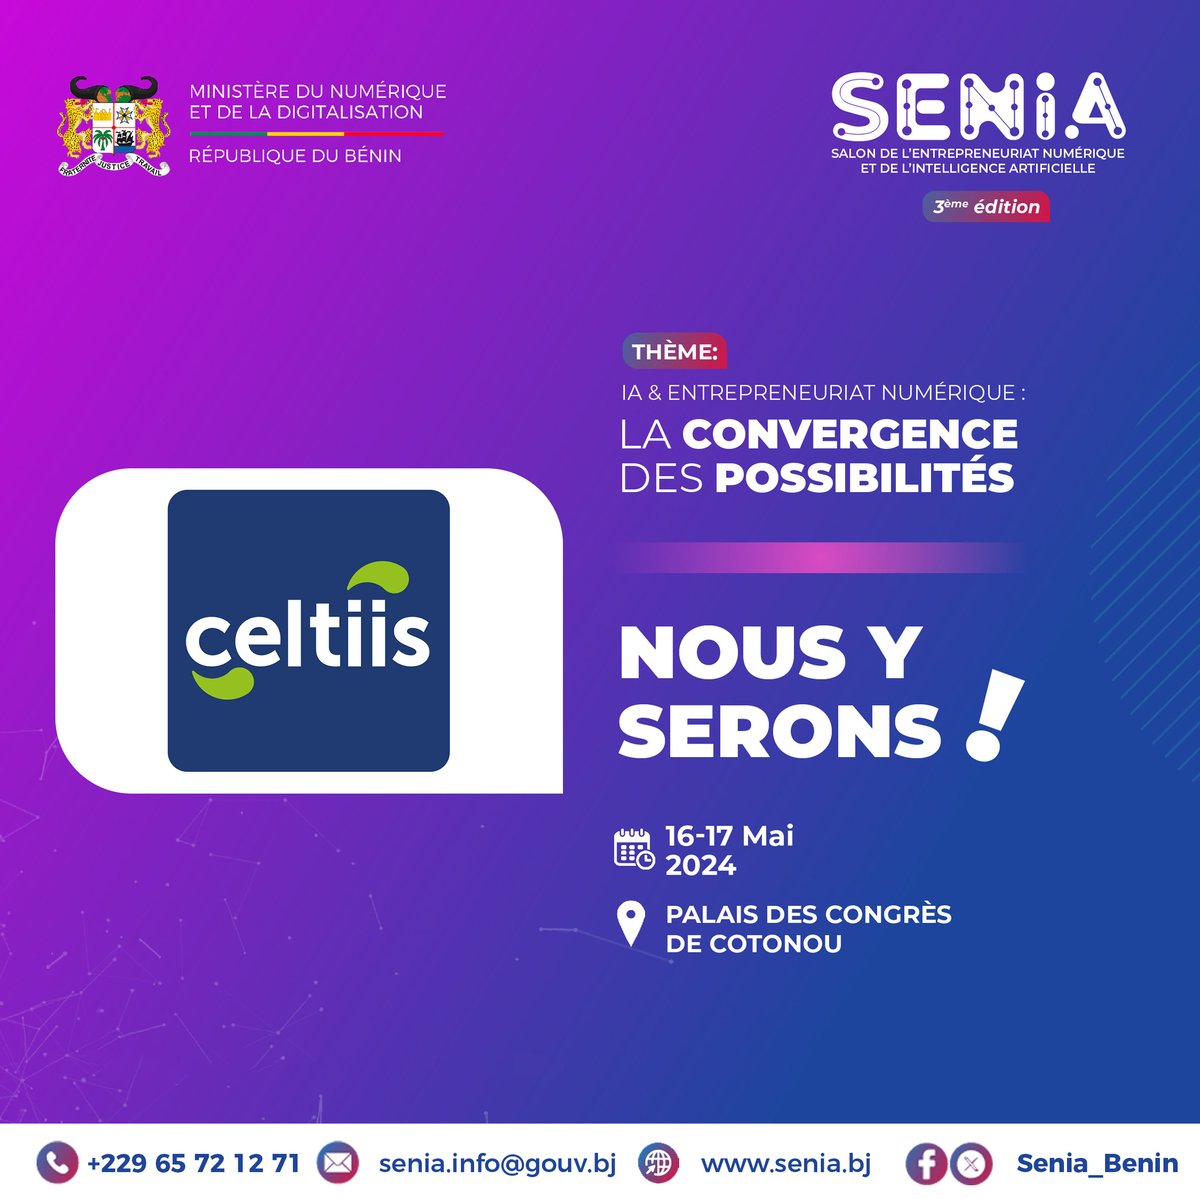 #Celtiis sera présent à la troisième édition du Salon de l'Entrepreneuriat Numérique et de l'Intelligence Artificielle (SENIA) les 16 et 17 mai prochain. ▶️Rejoignez-nous au Palais des Congrès de Cotonou pour découvrir nos offres innovantes. #SENIA2024